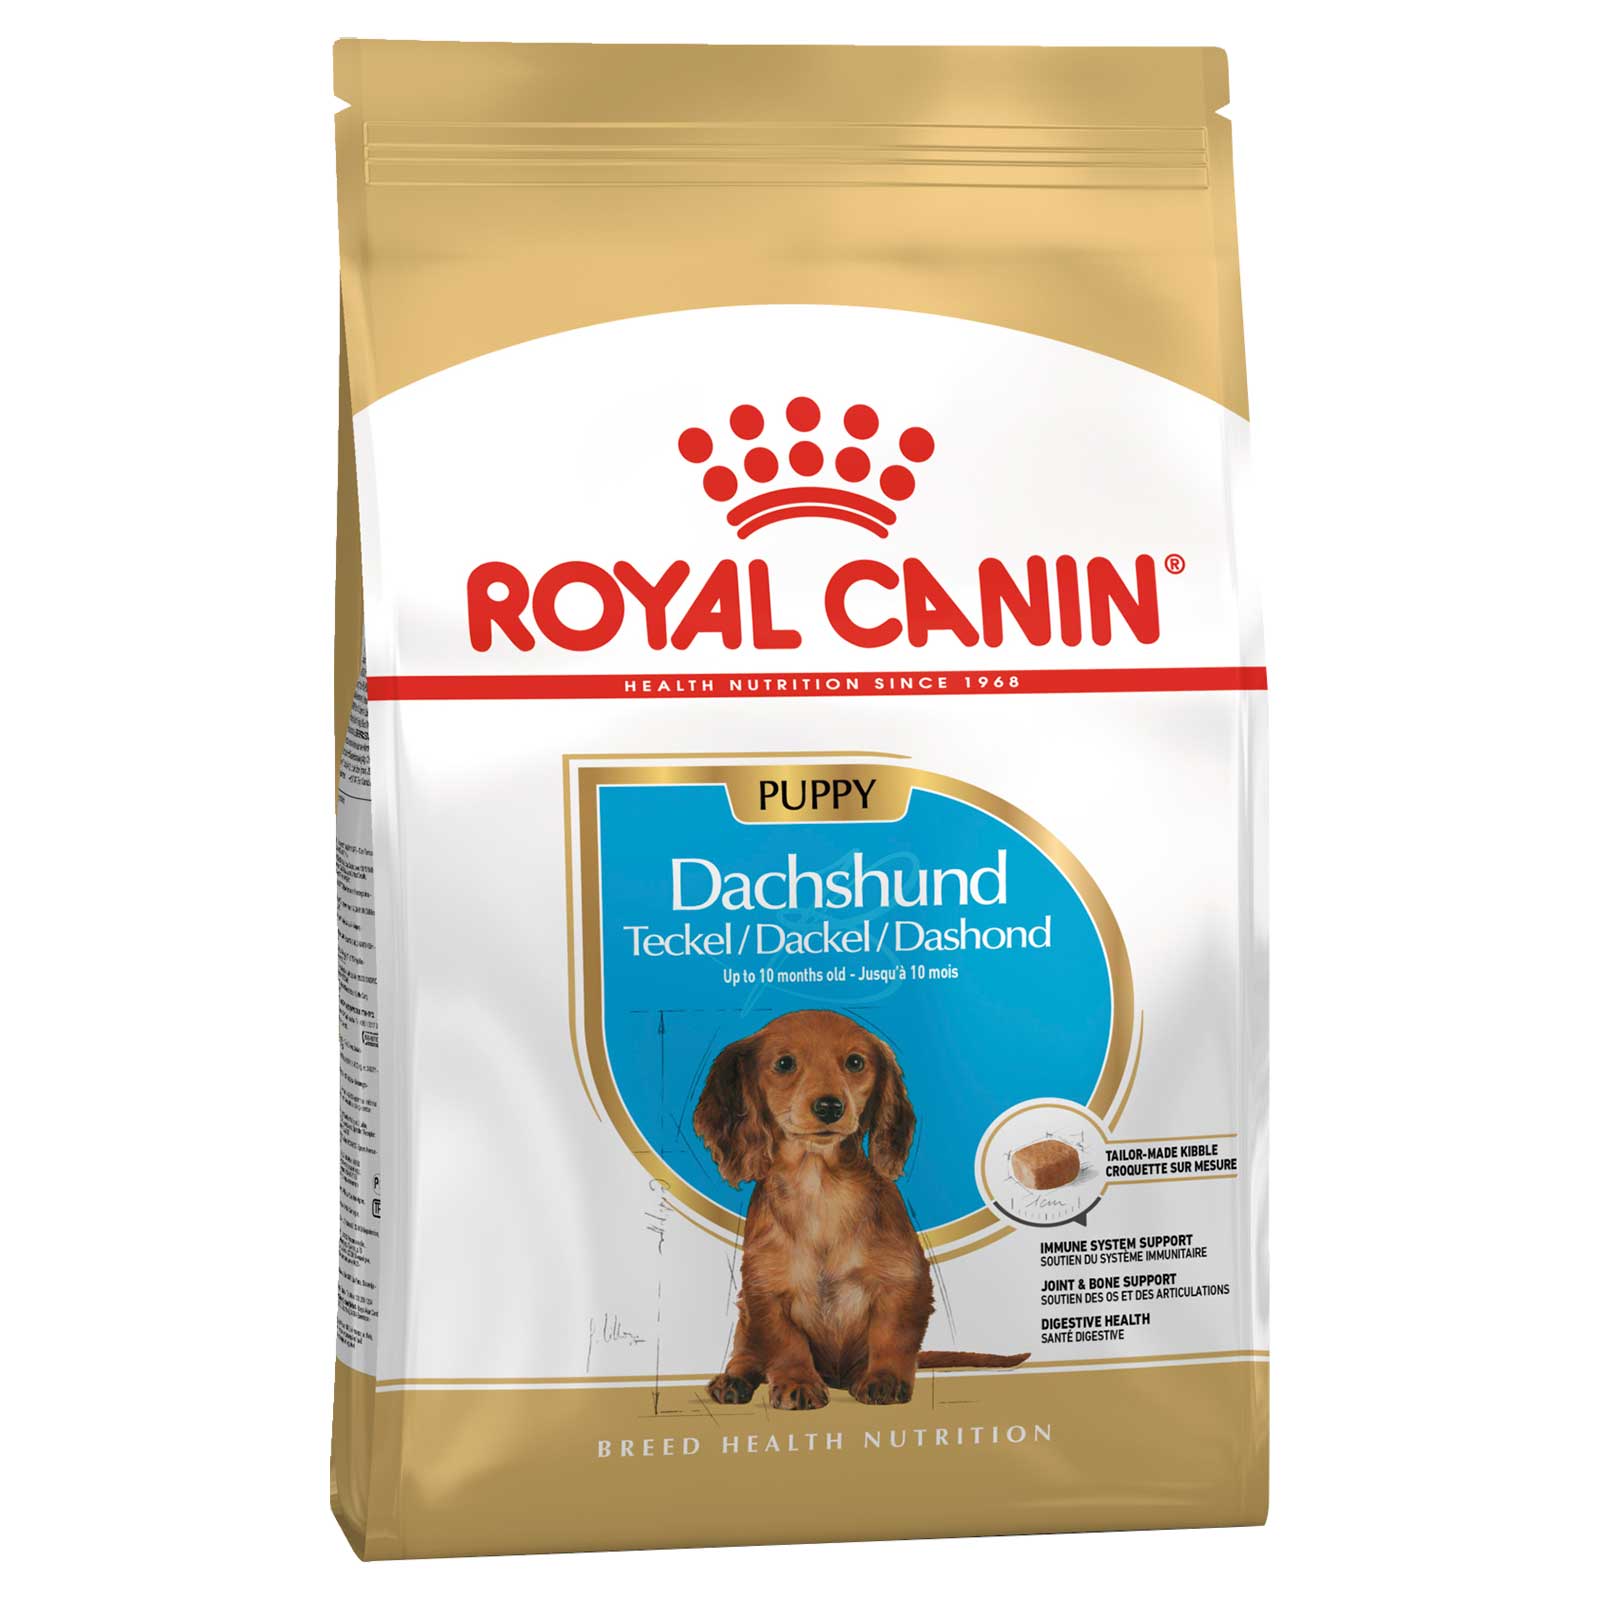 Royal Canin Dog Food Puppy Dachshund